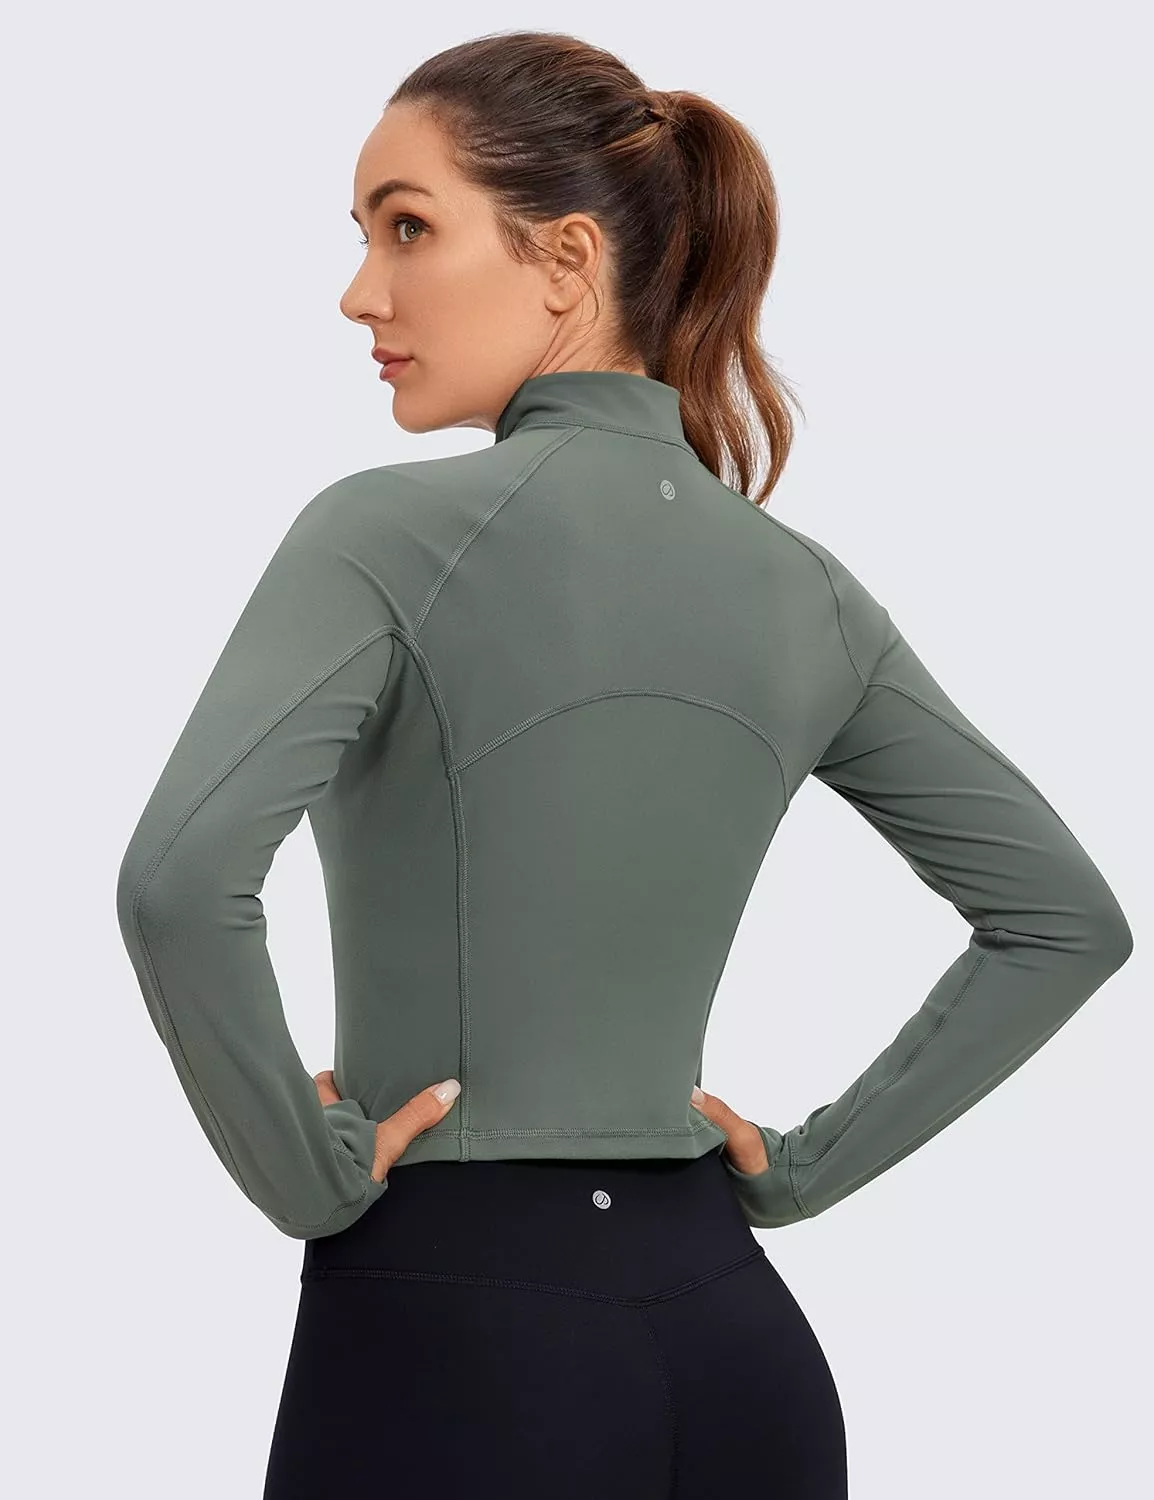 CRZ YOGA Women's Butterluxe Long Sleeve Workout Shirts Half Zip